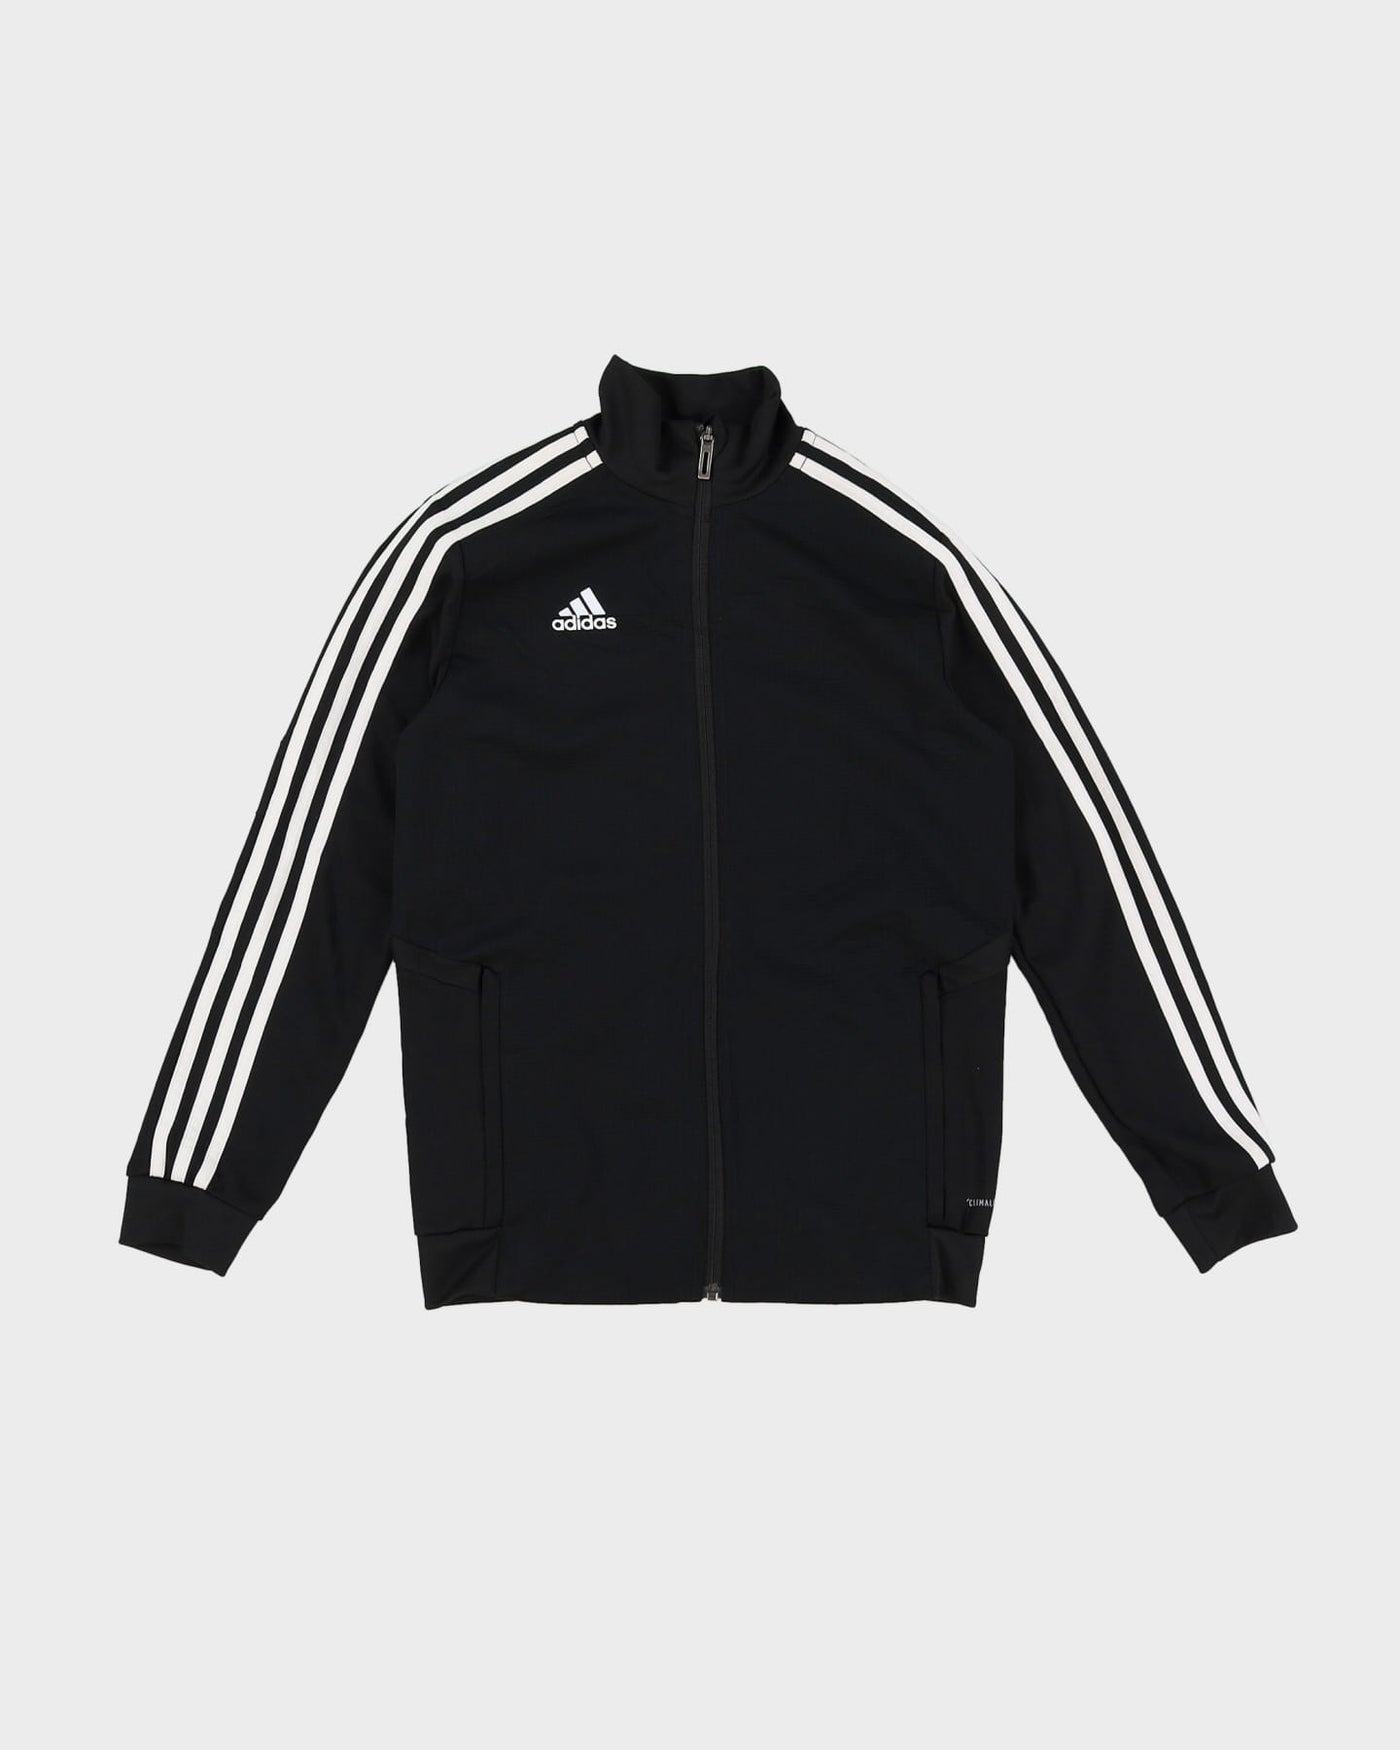 Adidas Black / White Track Jacket - S